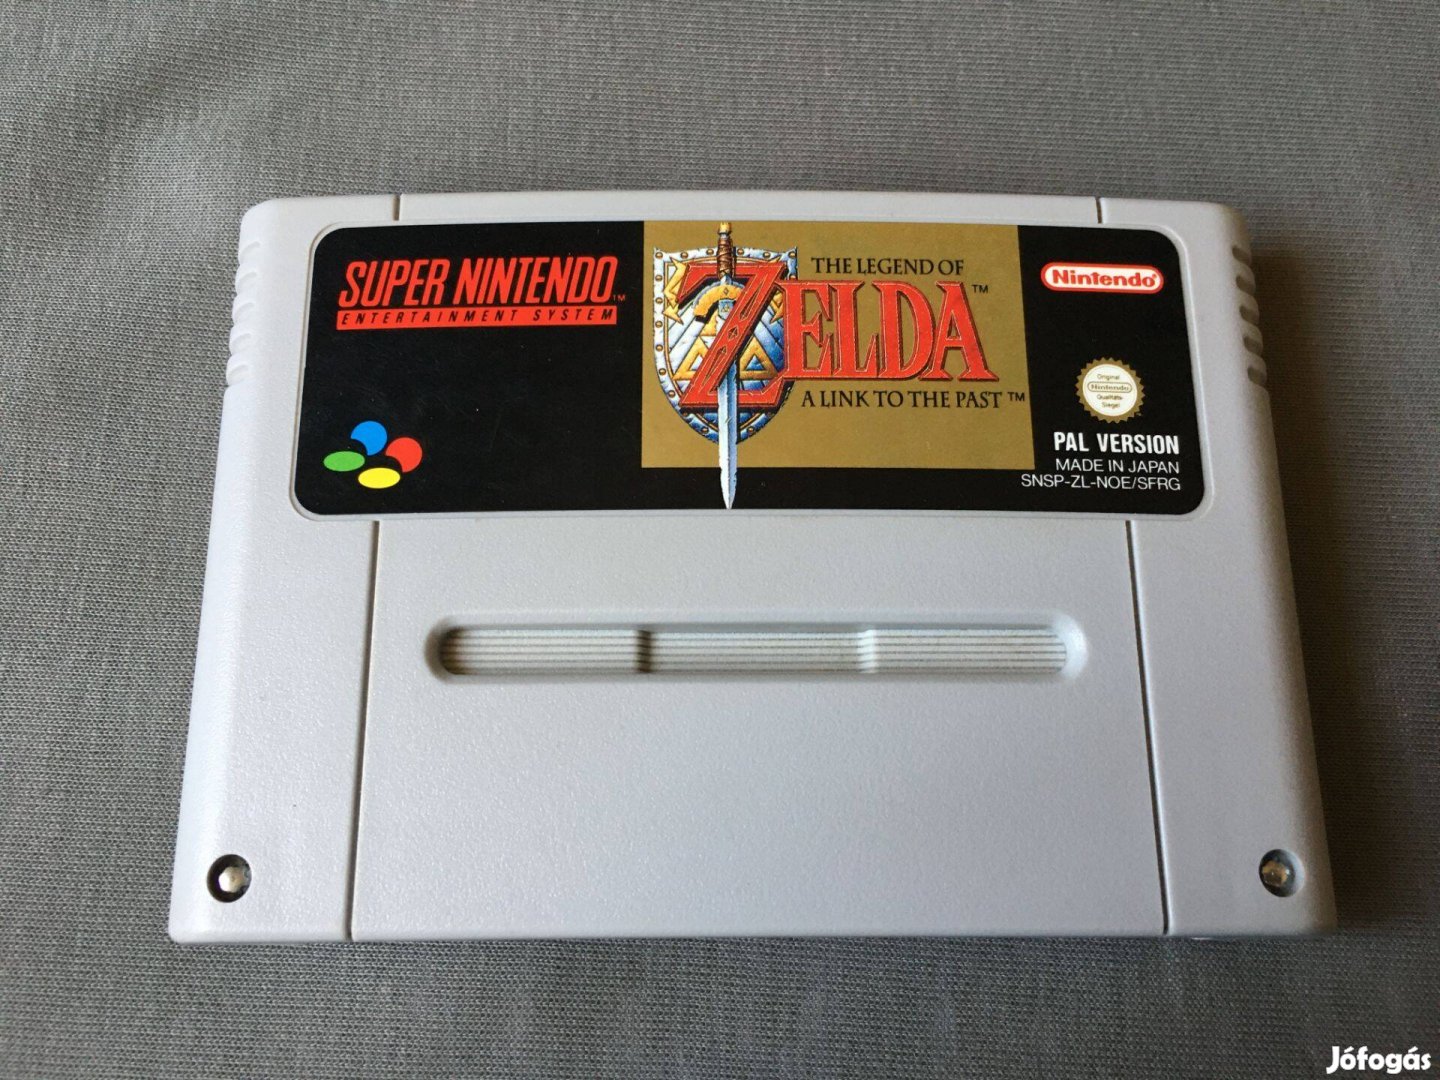 Super Nintendo - Legend of Zelda Link to the Past